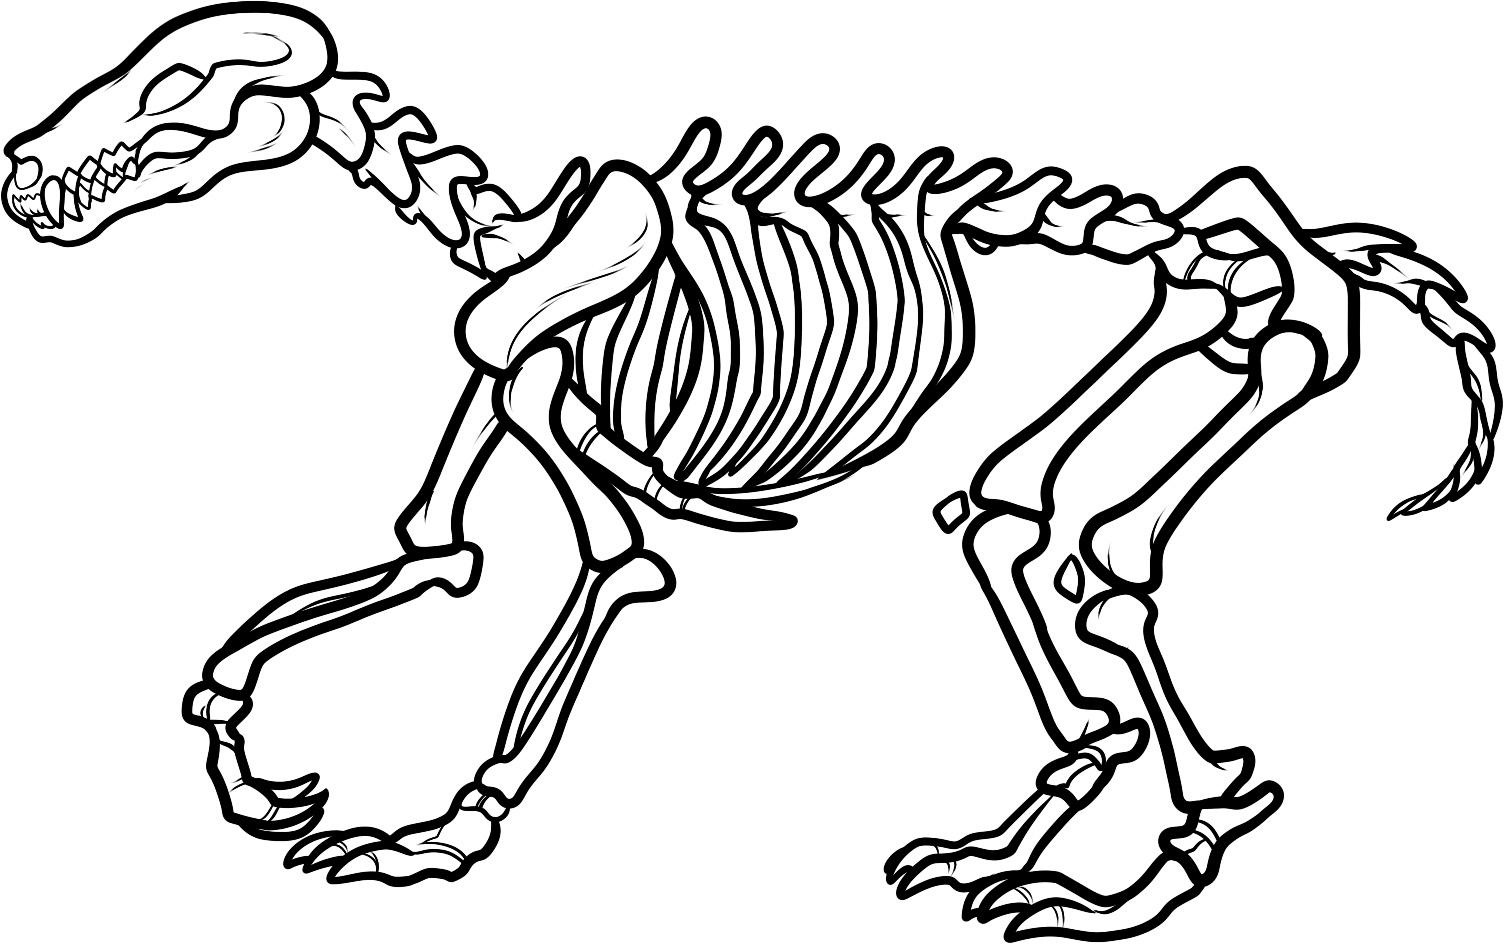 Раскраски скелета динозавра для мальчиков | Бесплатные раскраски для печати (скелет)